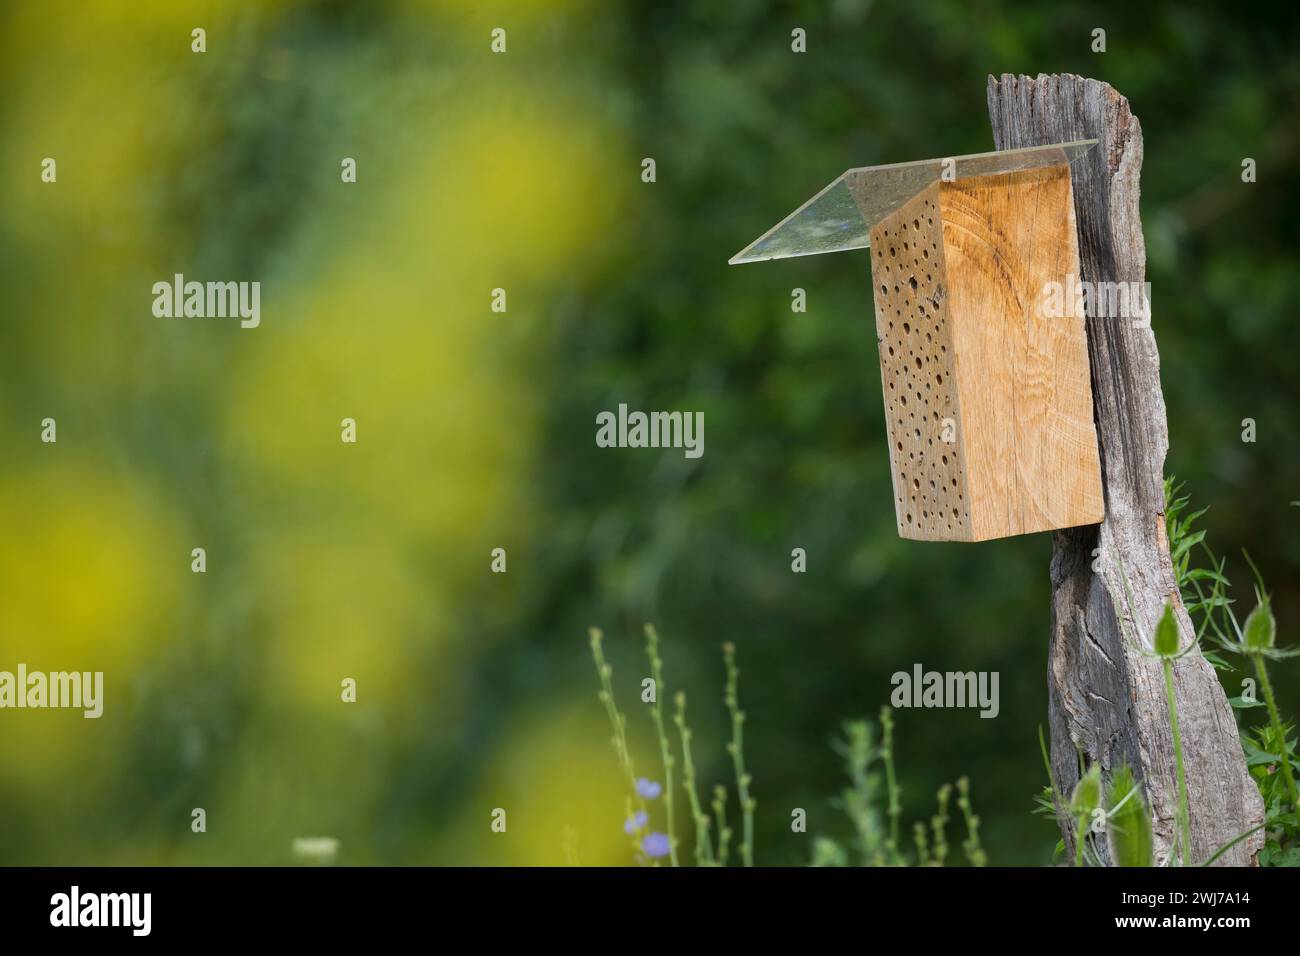 Wildbienen-Nisthilfe aus Hartholz, Massivholz, Holz. ALS Regenschutz wird auf die angeschrägte Seite des Klotzes eine Plexiglasscheibe aufgeschraubt. Foto Stock